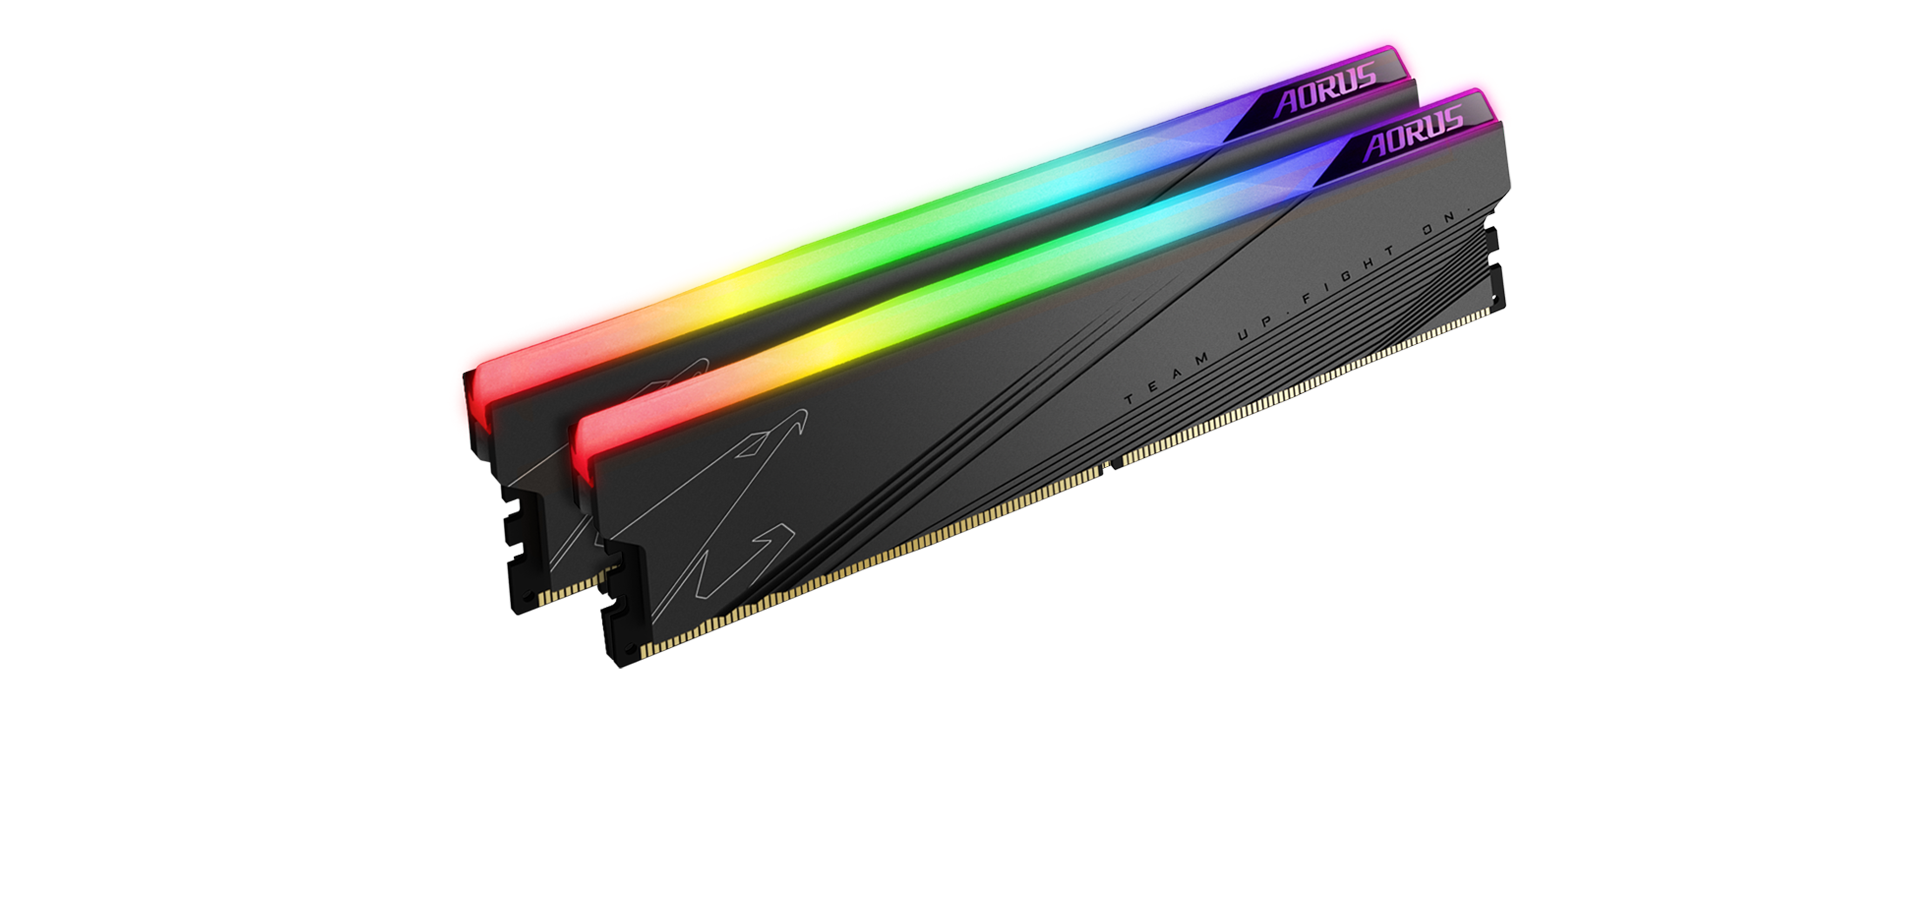 Immagine pubblicata in relazione al seguente contenuto: GIGABYTE annuncia il memory kit AORUS RGB DDR5 6000MHz 32GB | Nome immagine: news32845_GIGABYTE-AORUS-RGB-DDR5-32GB_1.png